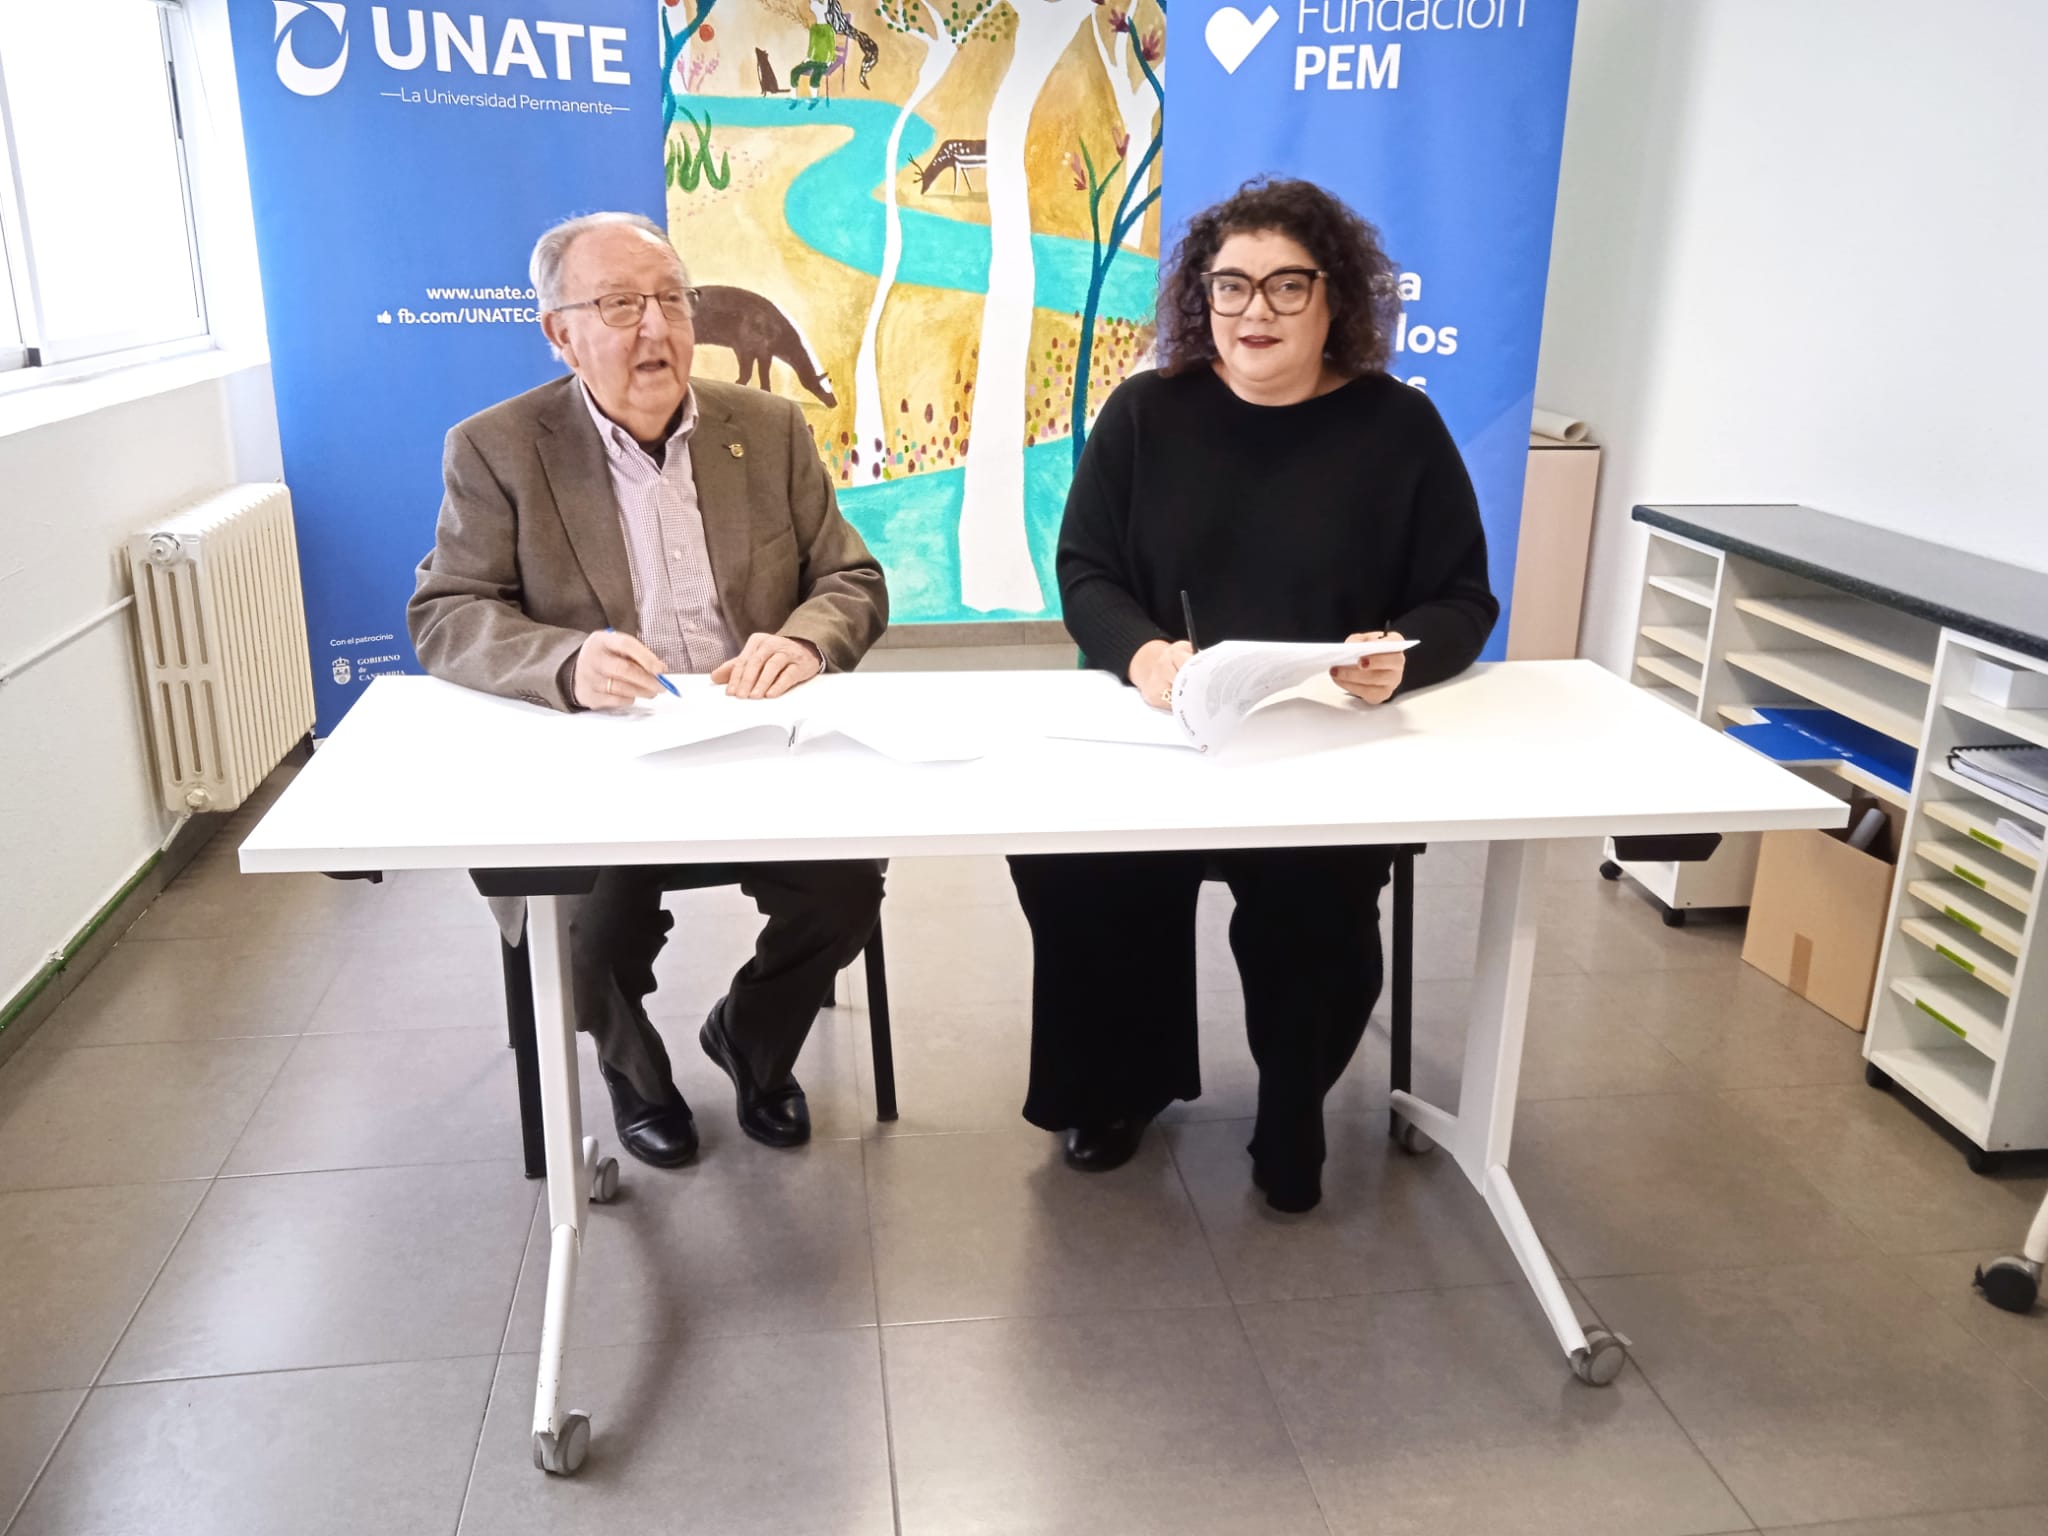 El Colegio de Periodistas de Cantabria, UNATE y la Fundación PEM se unen para promover un periodismo respetuoso hacia las personas mayores